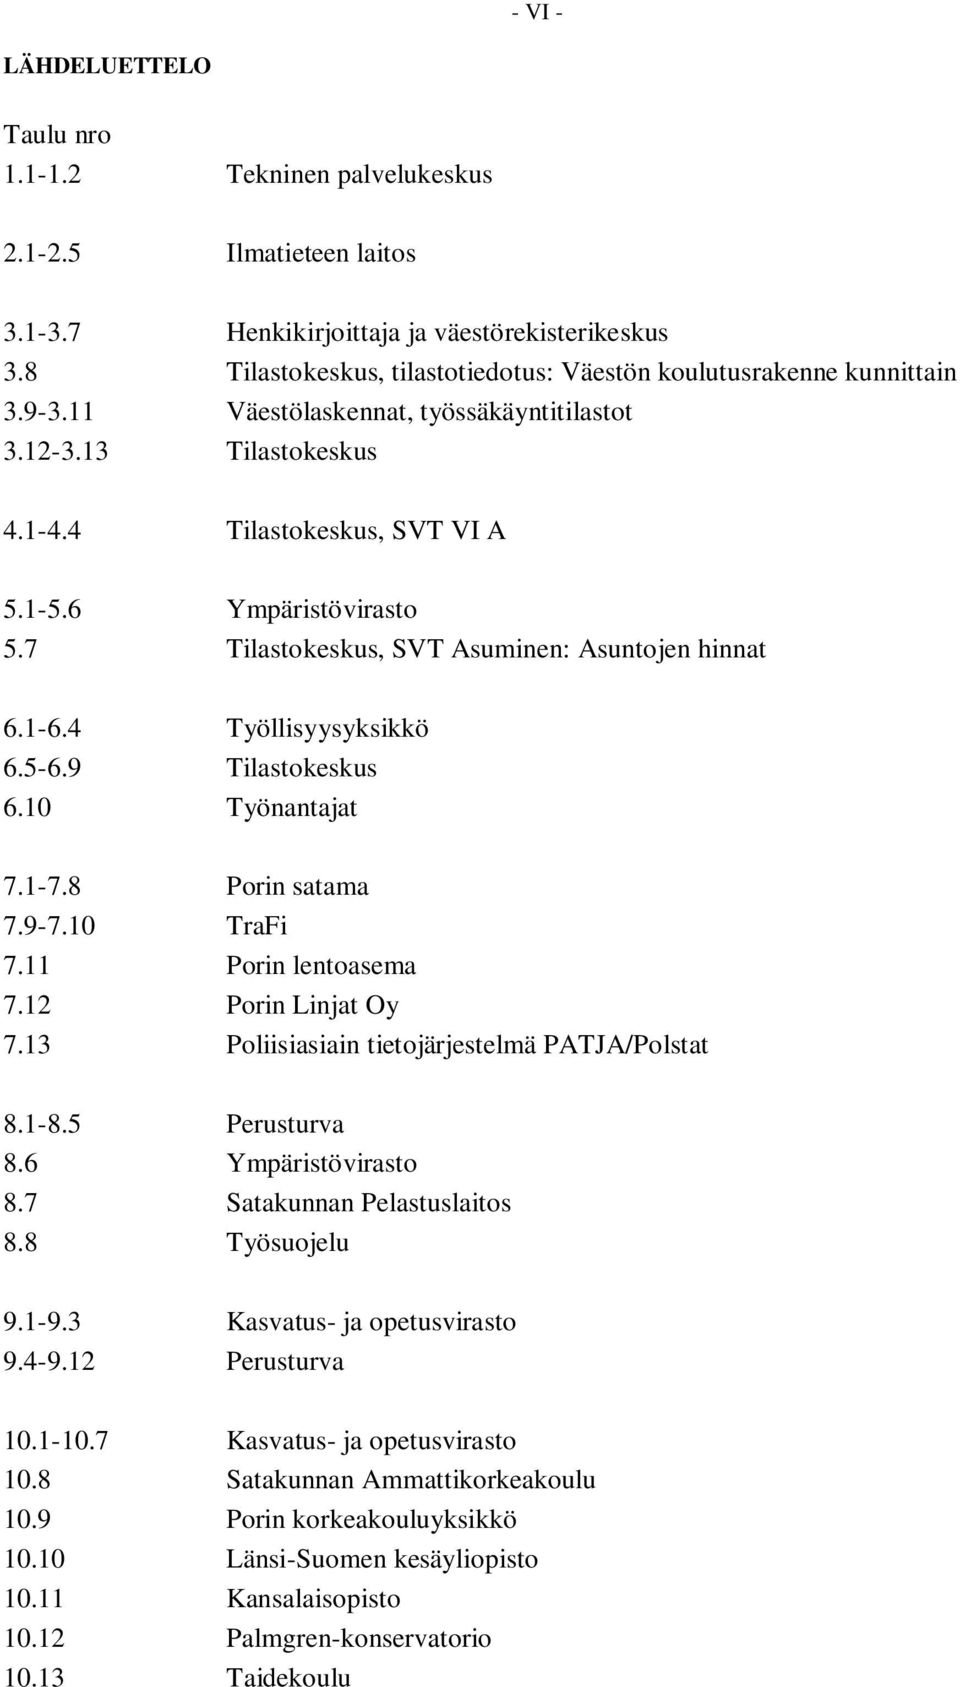 7 Tilastokeskus, SVT Asuminen: Asuntojen hinnat 6.1-6.4 Työllisyysyksikkö 6.5-6.9 Tilastokeskus 6.10 Työnantajat 7.1-7.8 Porin satama 7.9-7.10 TraFi 7.11 Porin lentoasema 7.12 Porin Linjat Oy 7.